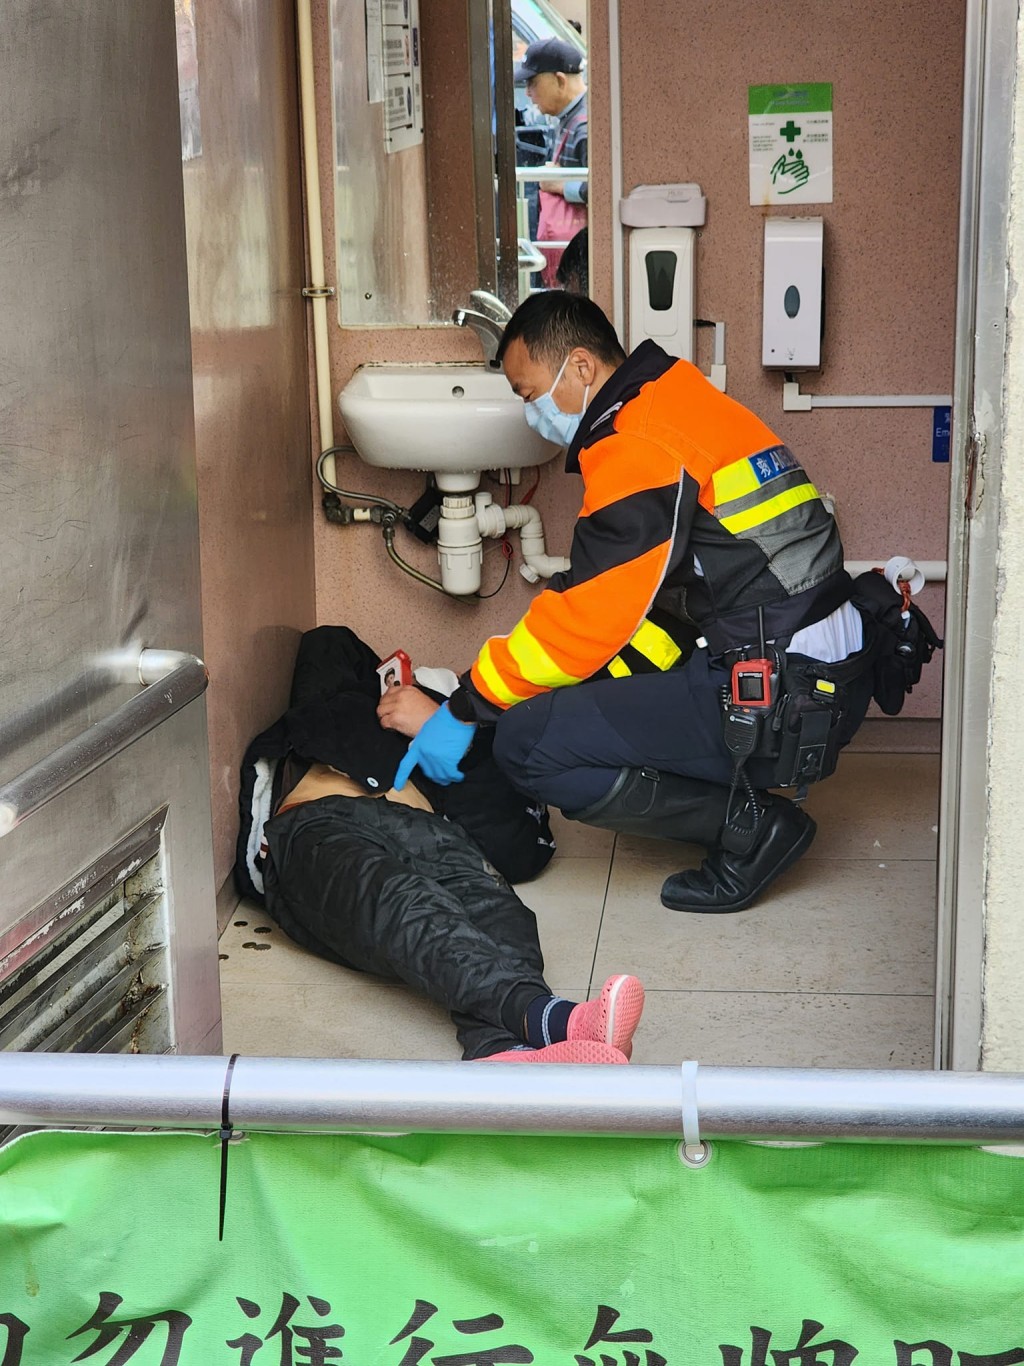 男子倒卧公厕厕格内。fb：深水埗街坊会